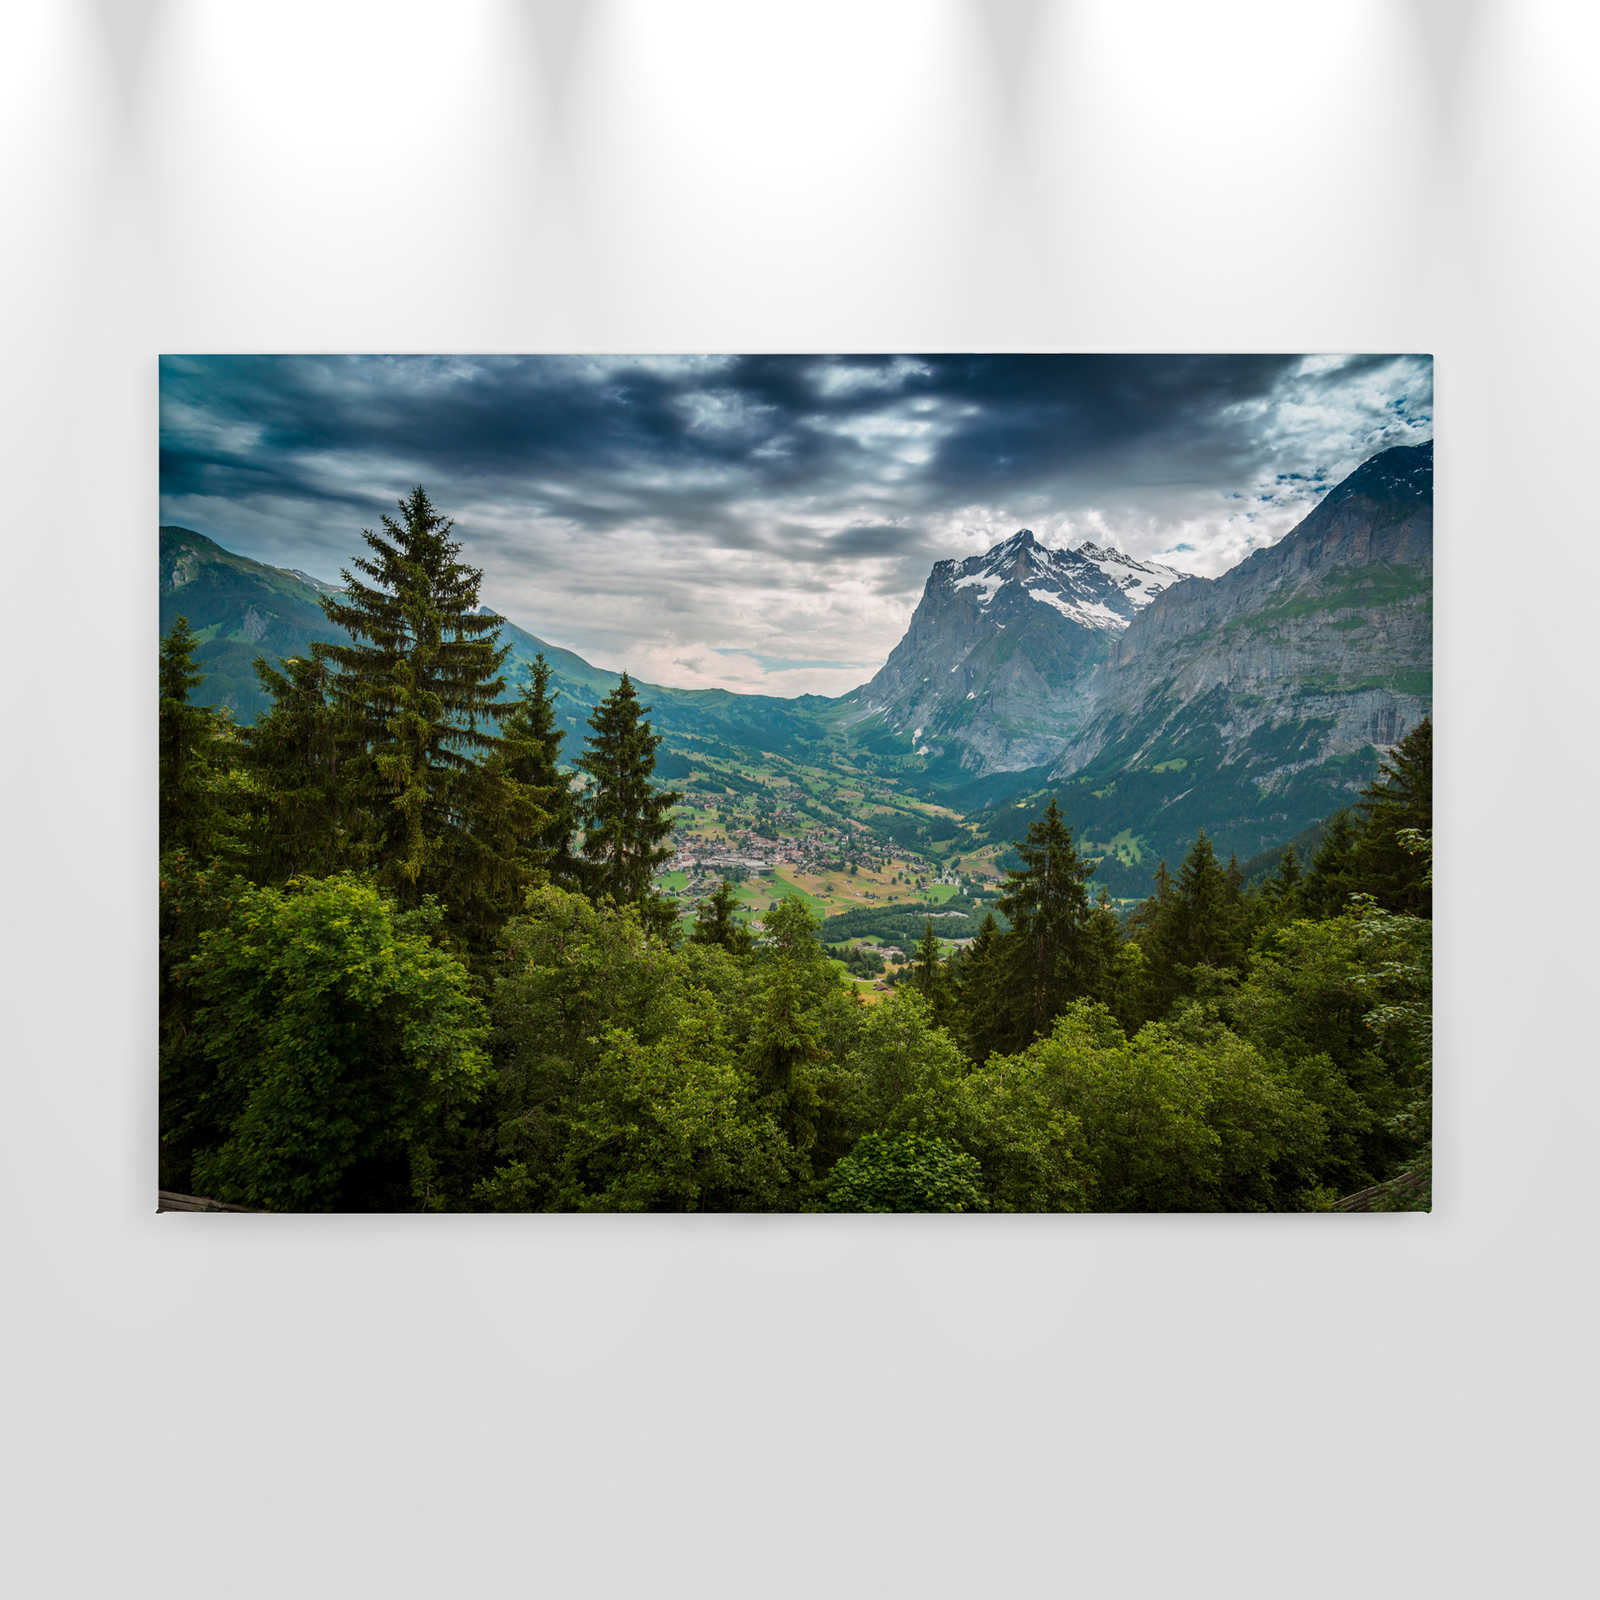             Canvas met berglandschap - 0,90 m x 0,60 m
        